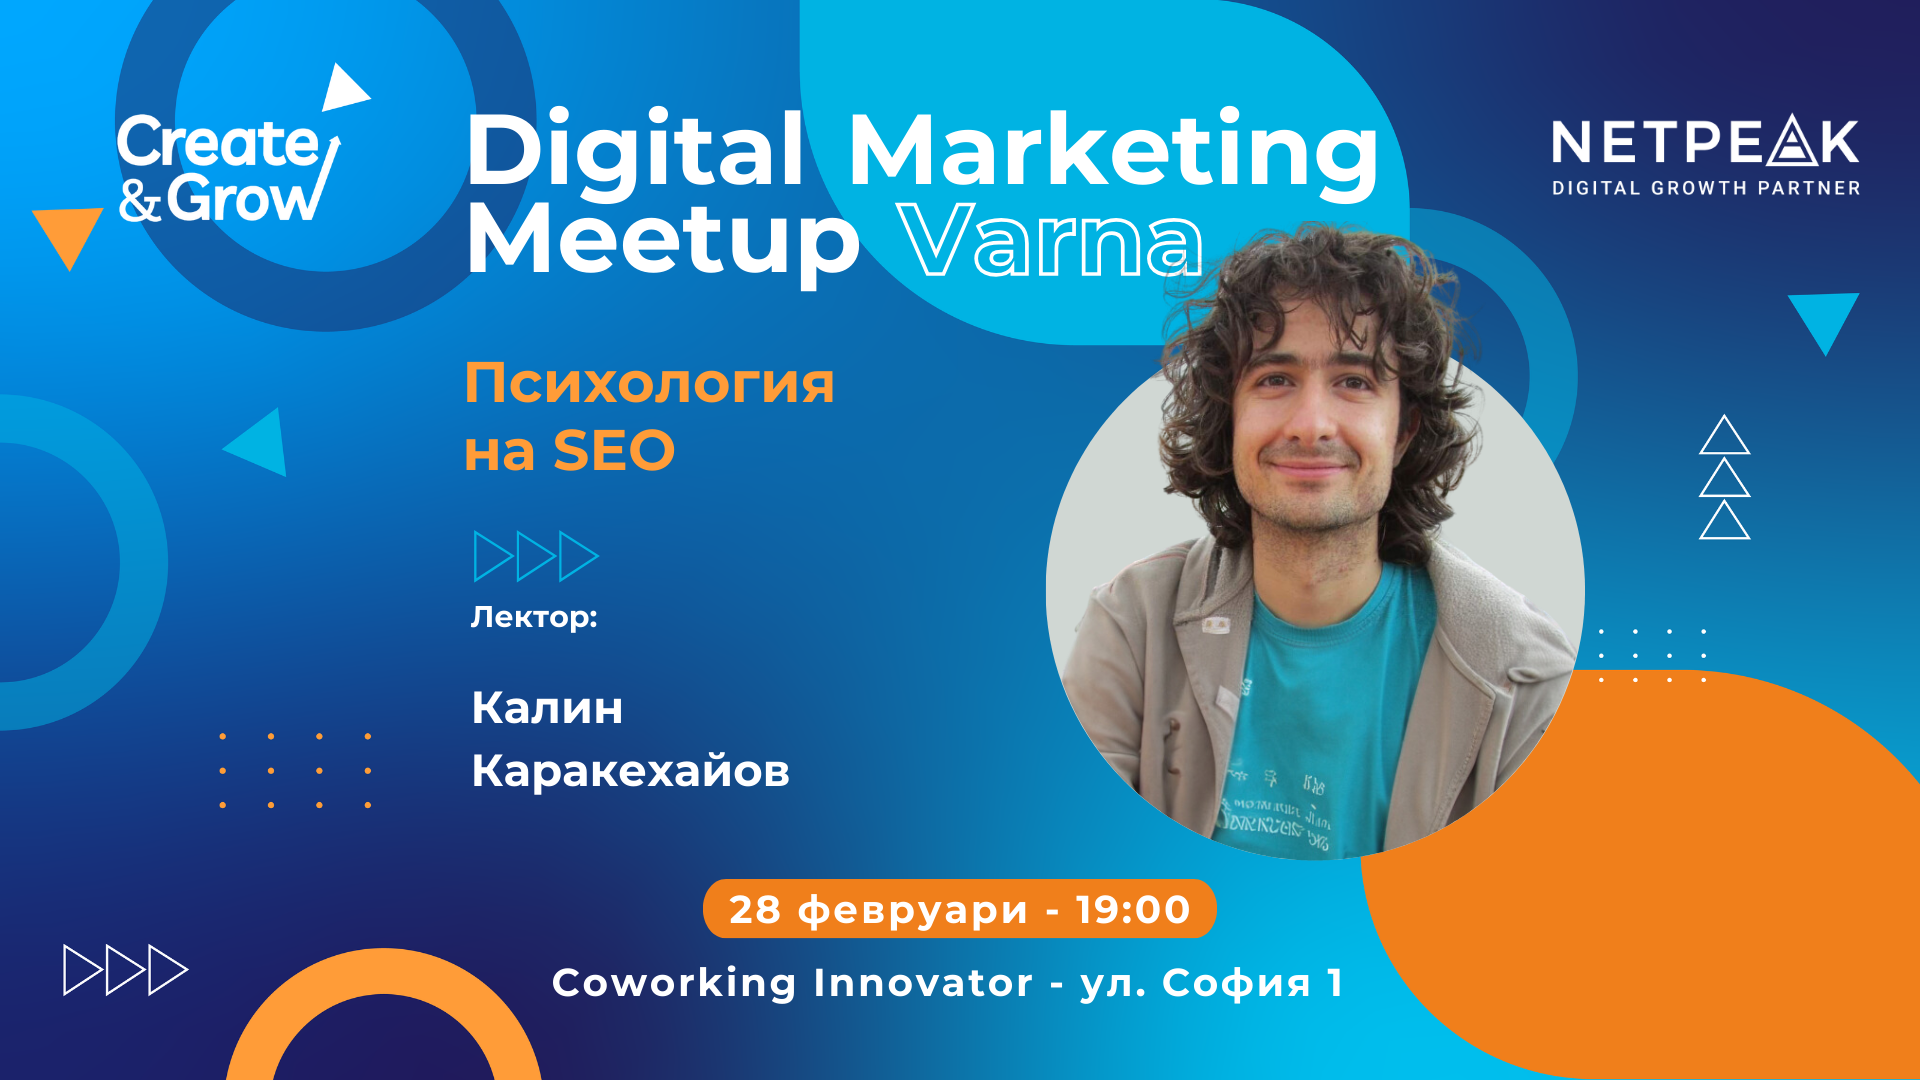 Digital Marketing Meetup Varna 6 | Innovator Coworking Space